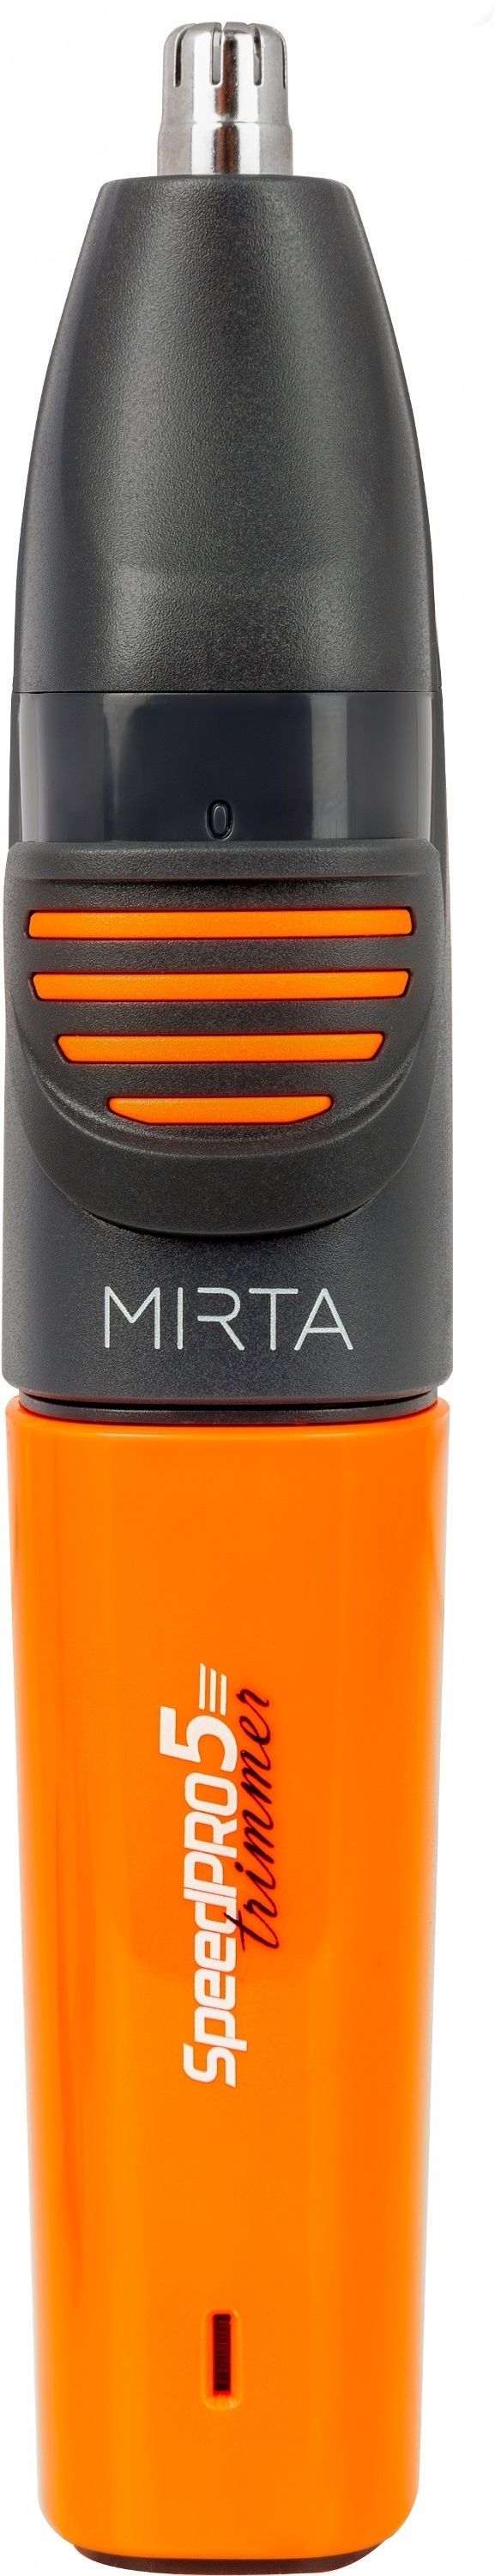 Акция на Тример універсальний MIRTA HT-5216 от Територія твоєї техніки - 8